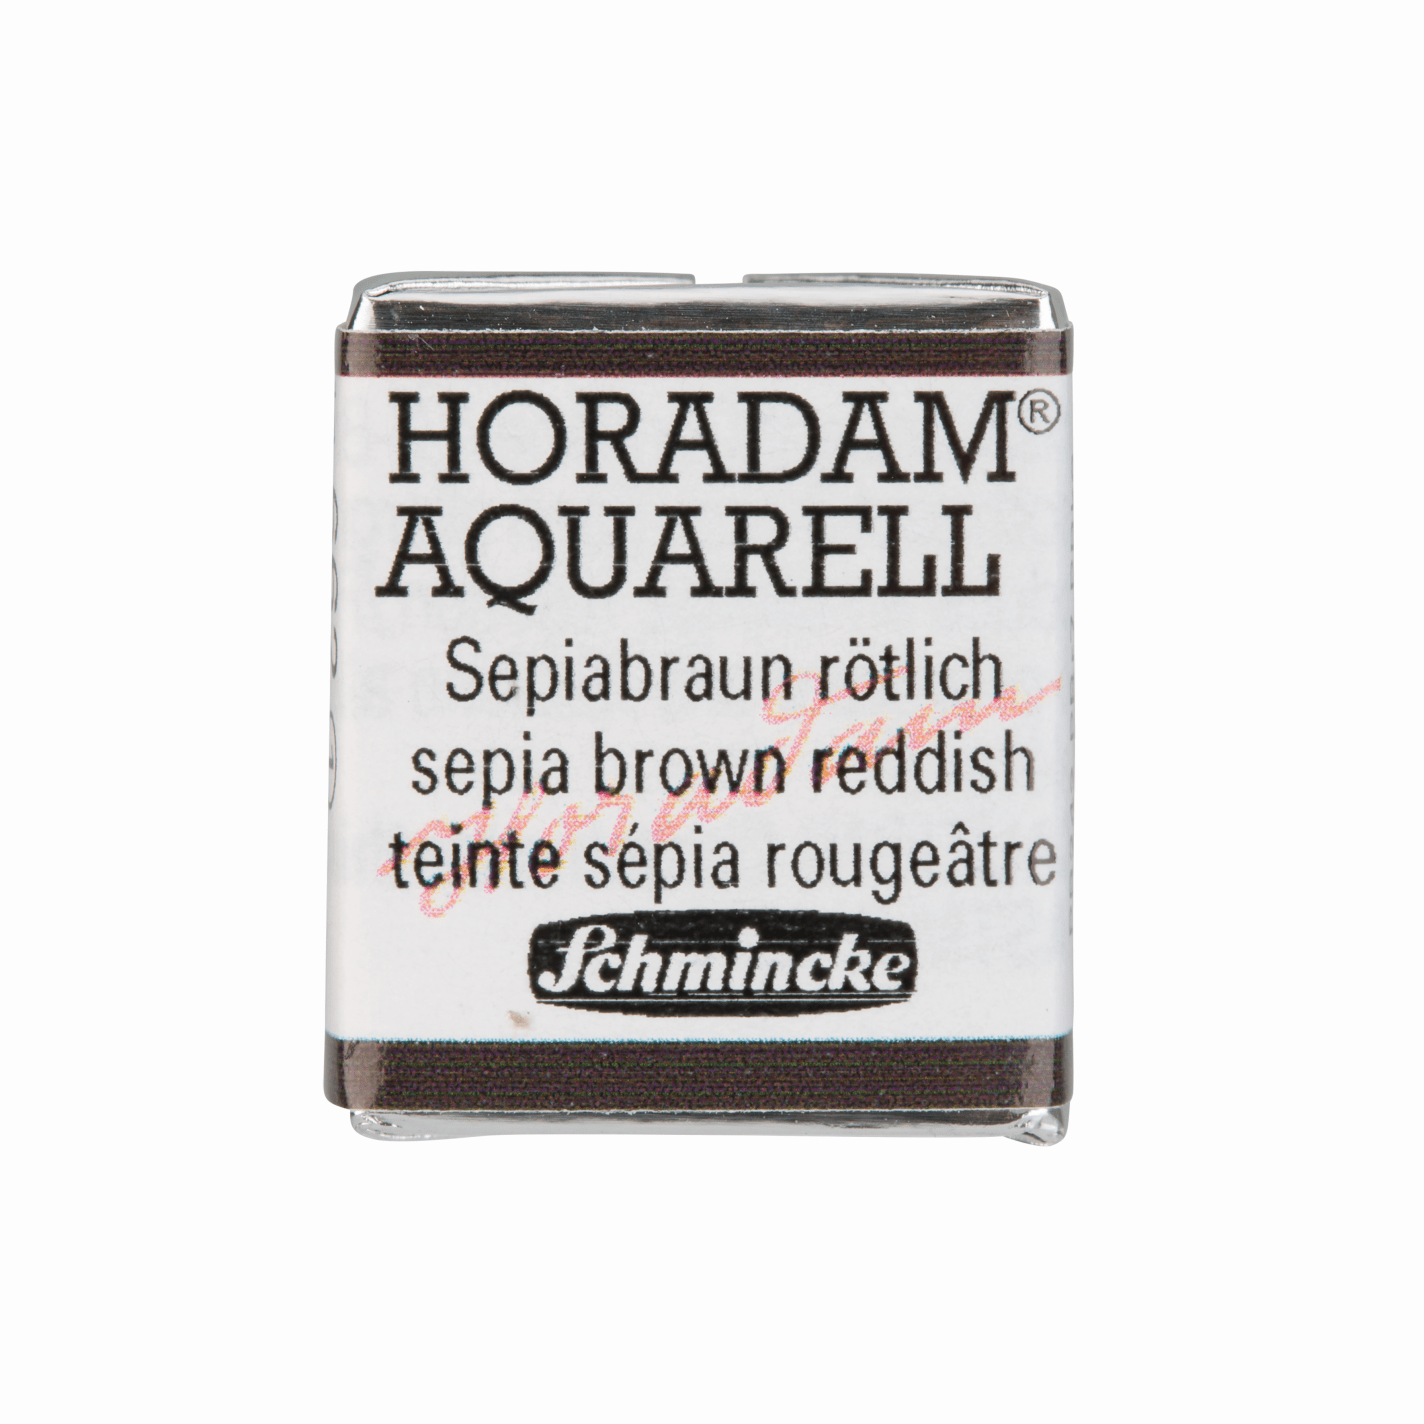 Schmincke Horadam Aquarell pans 1/2 pan Sepia Brown Reddish